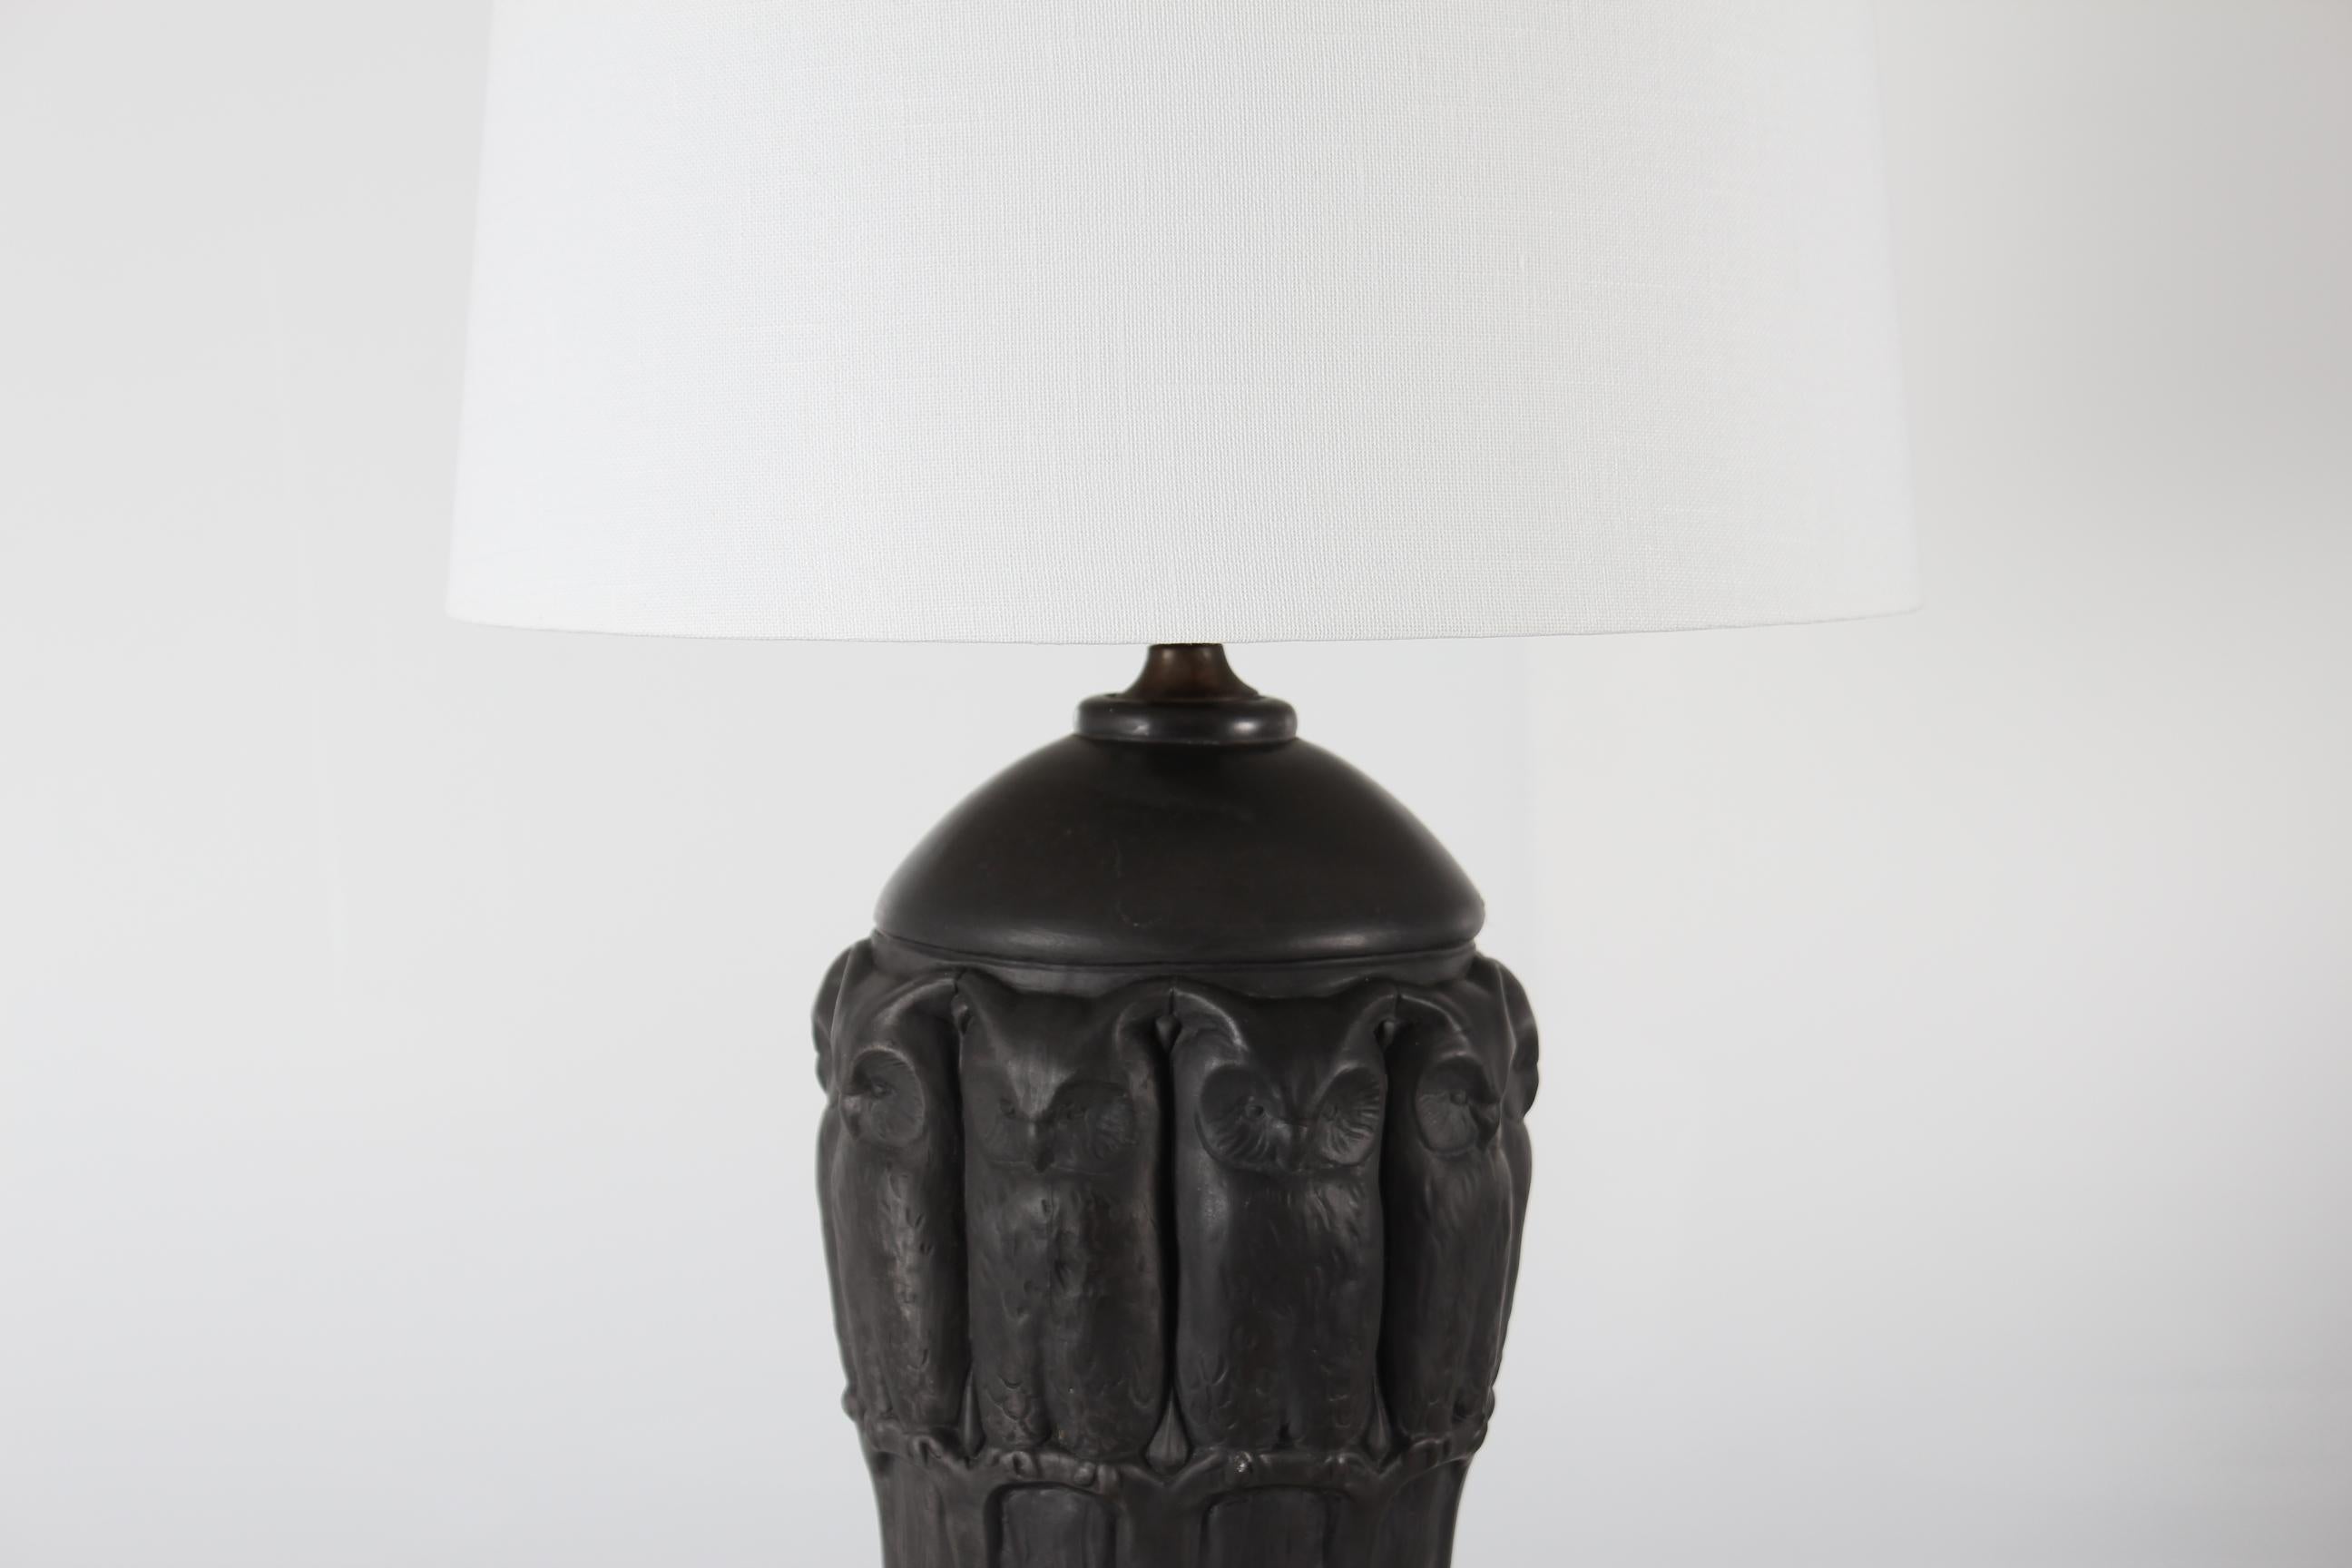 Lampe de table Art Nouveau du studio de céramique danois L. Hjorth sur l'île de Bornholm.
La base de la lampe est en terre cuite noire avec une décoration de hibou modèle no. 653.

Un nouvel abat-jour de qualité, conçu et fabriqué au Danemark, est